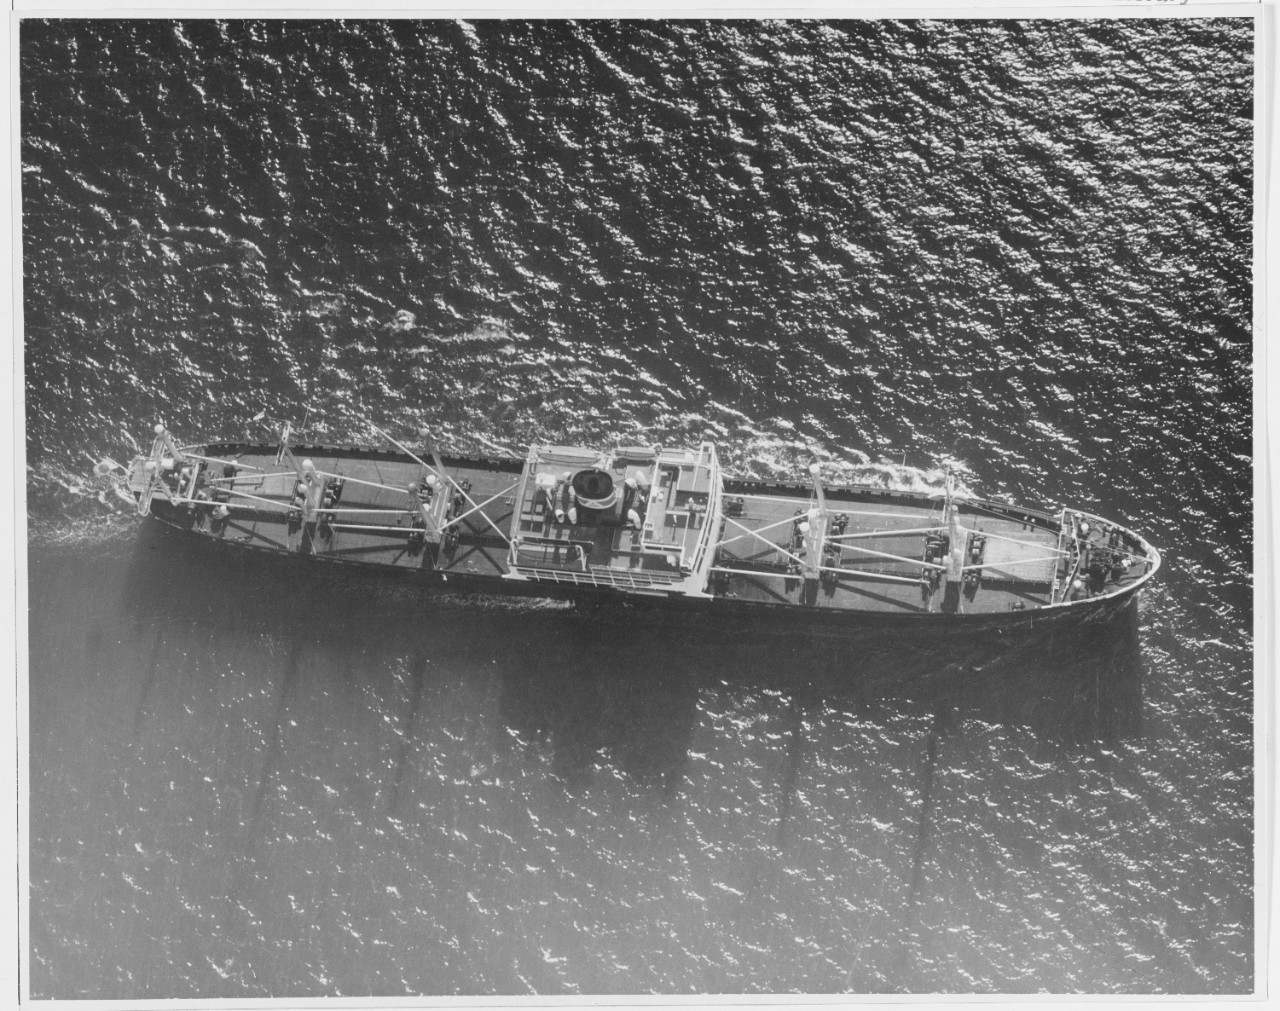 Japanese ship: KOMAKI MARU, September 11, 1937